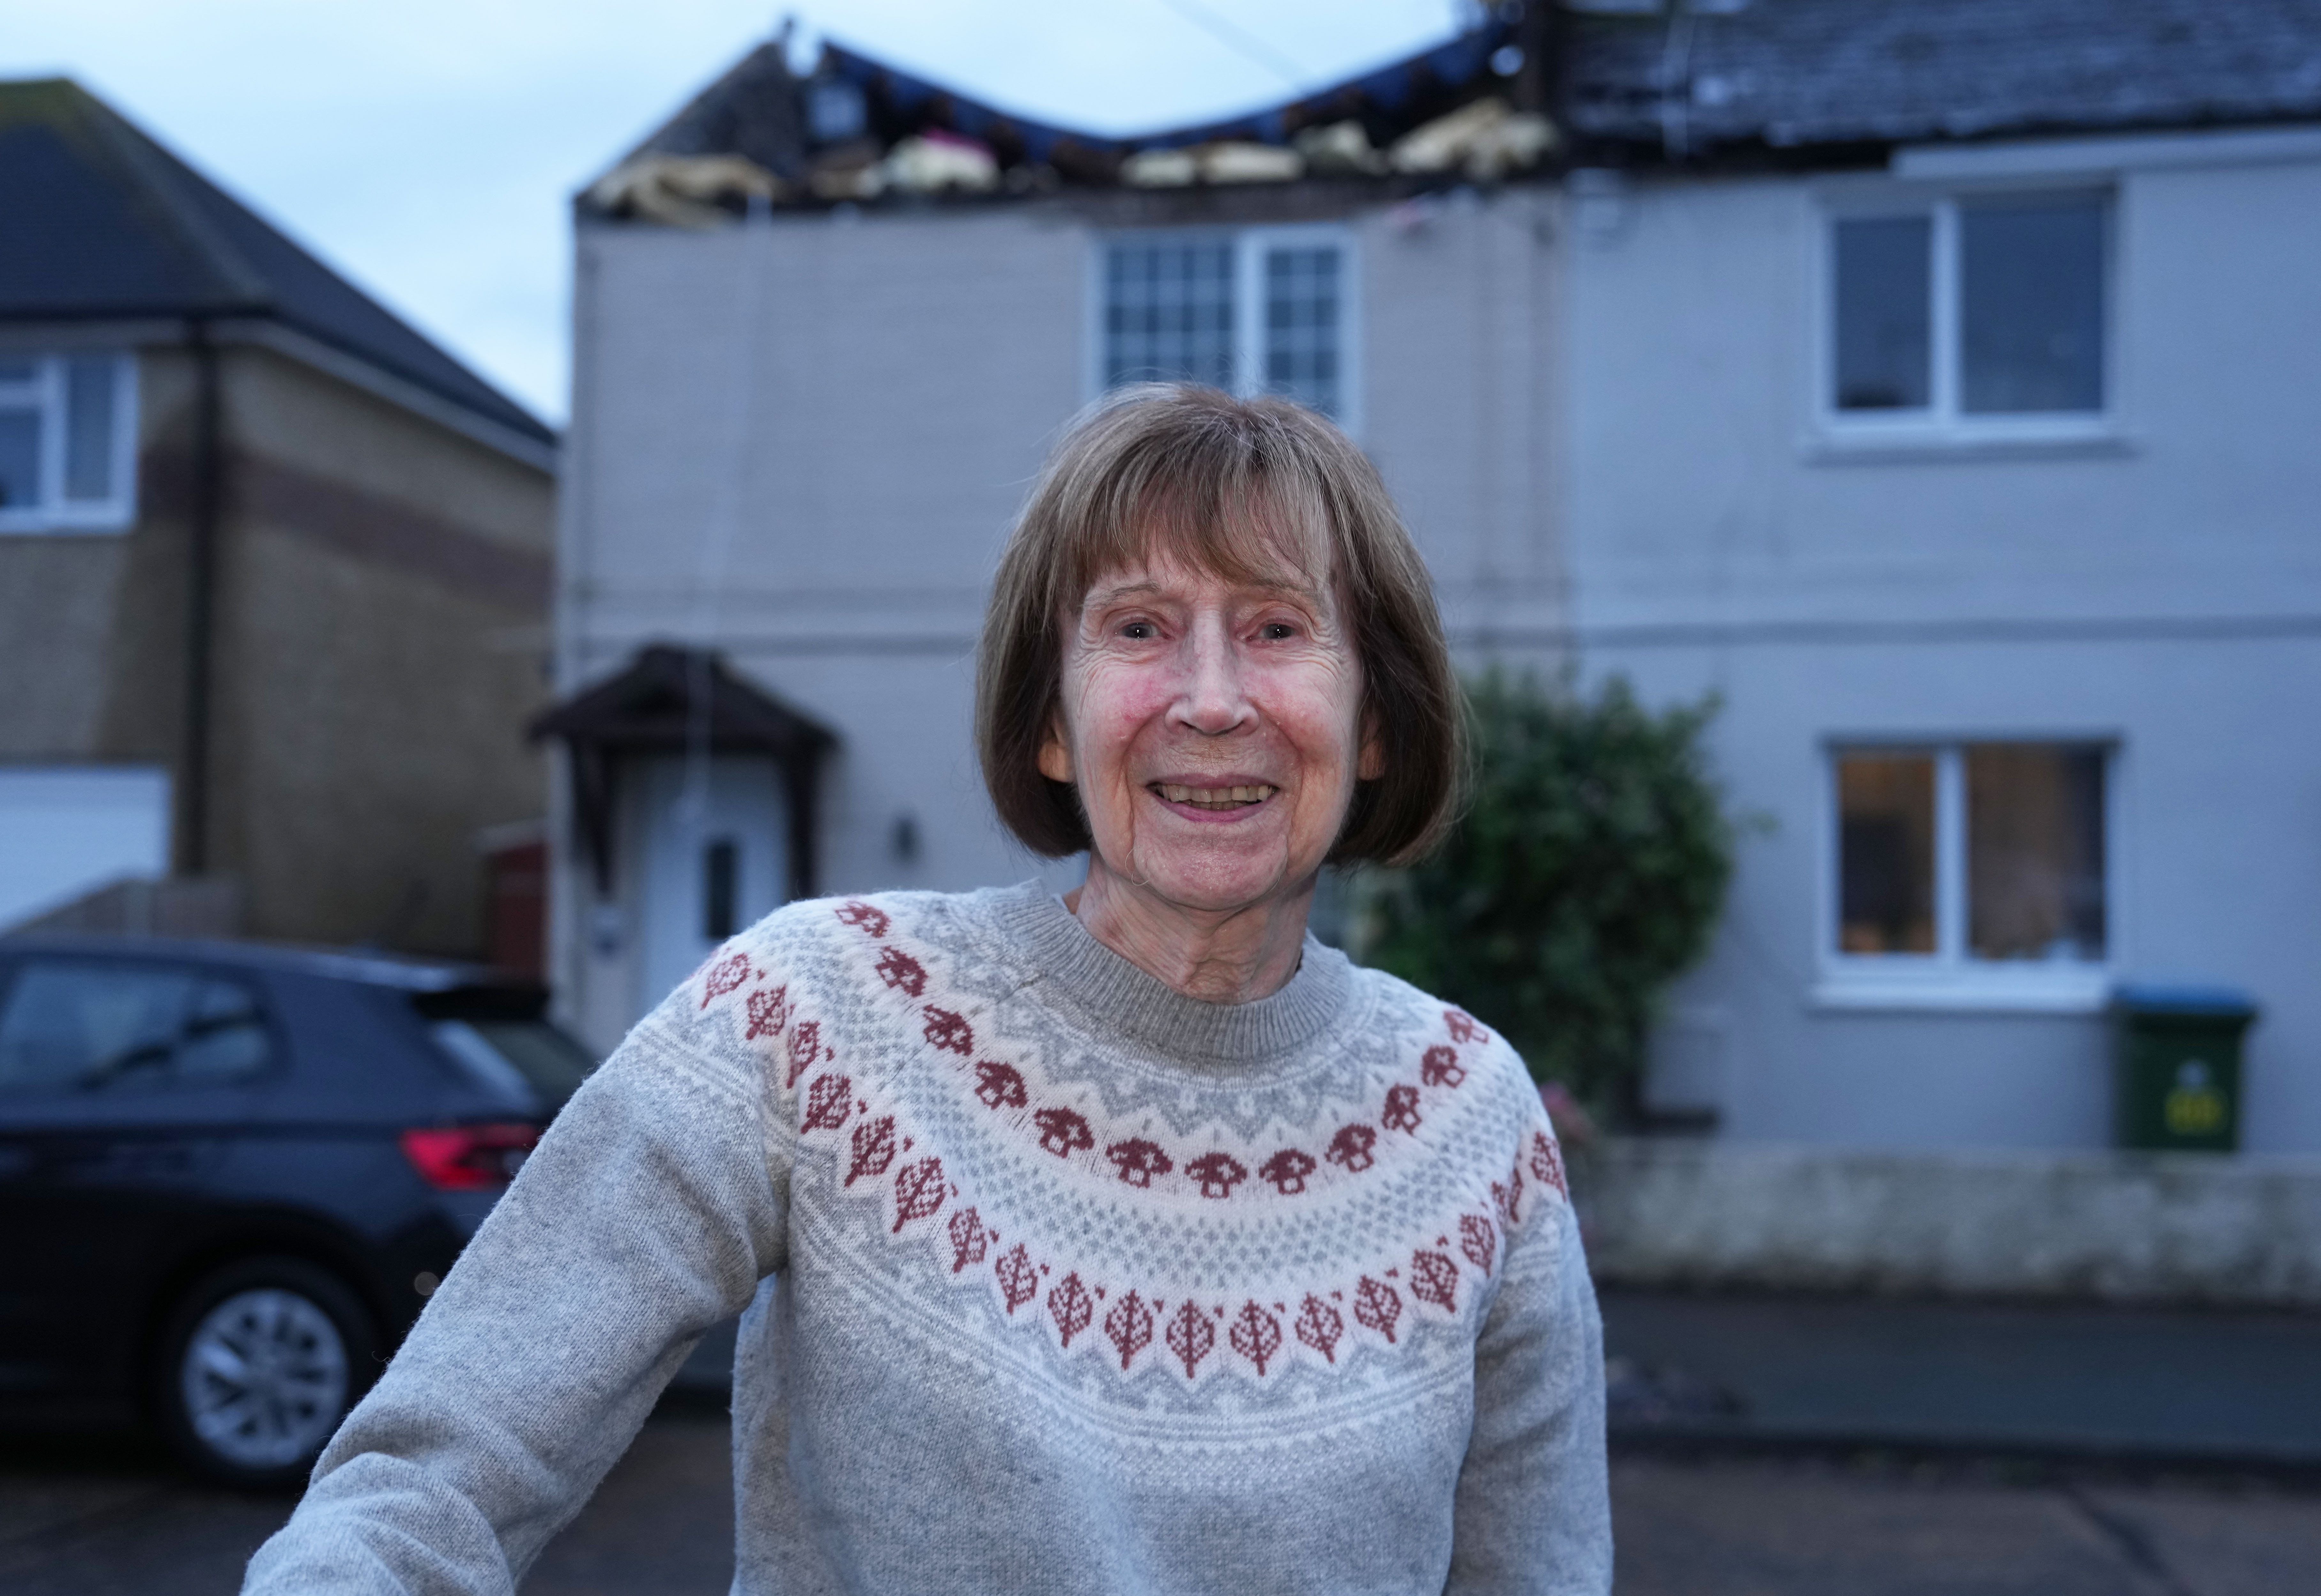 Margaret Mullineux, 89, war allein, als der Twister in ihr Grundstück einschlug